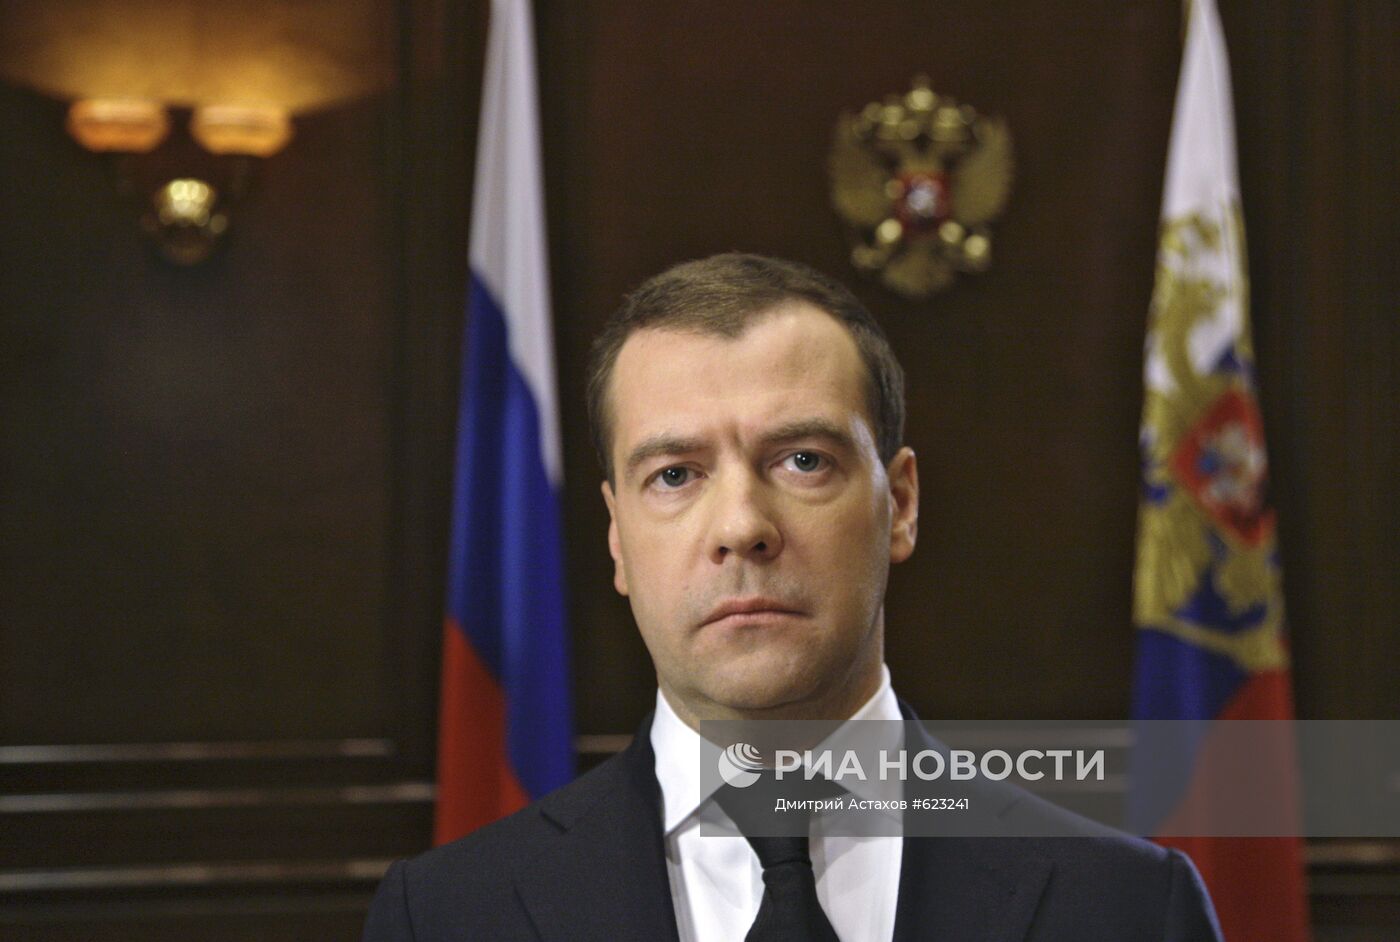 Обращение к польскому народу президента России Дмитрия Медведева